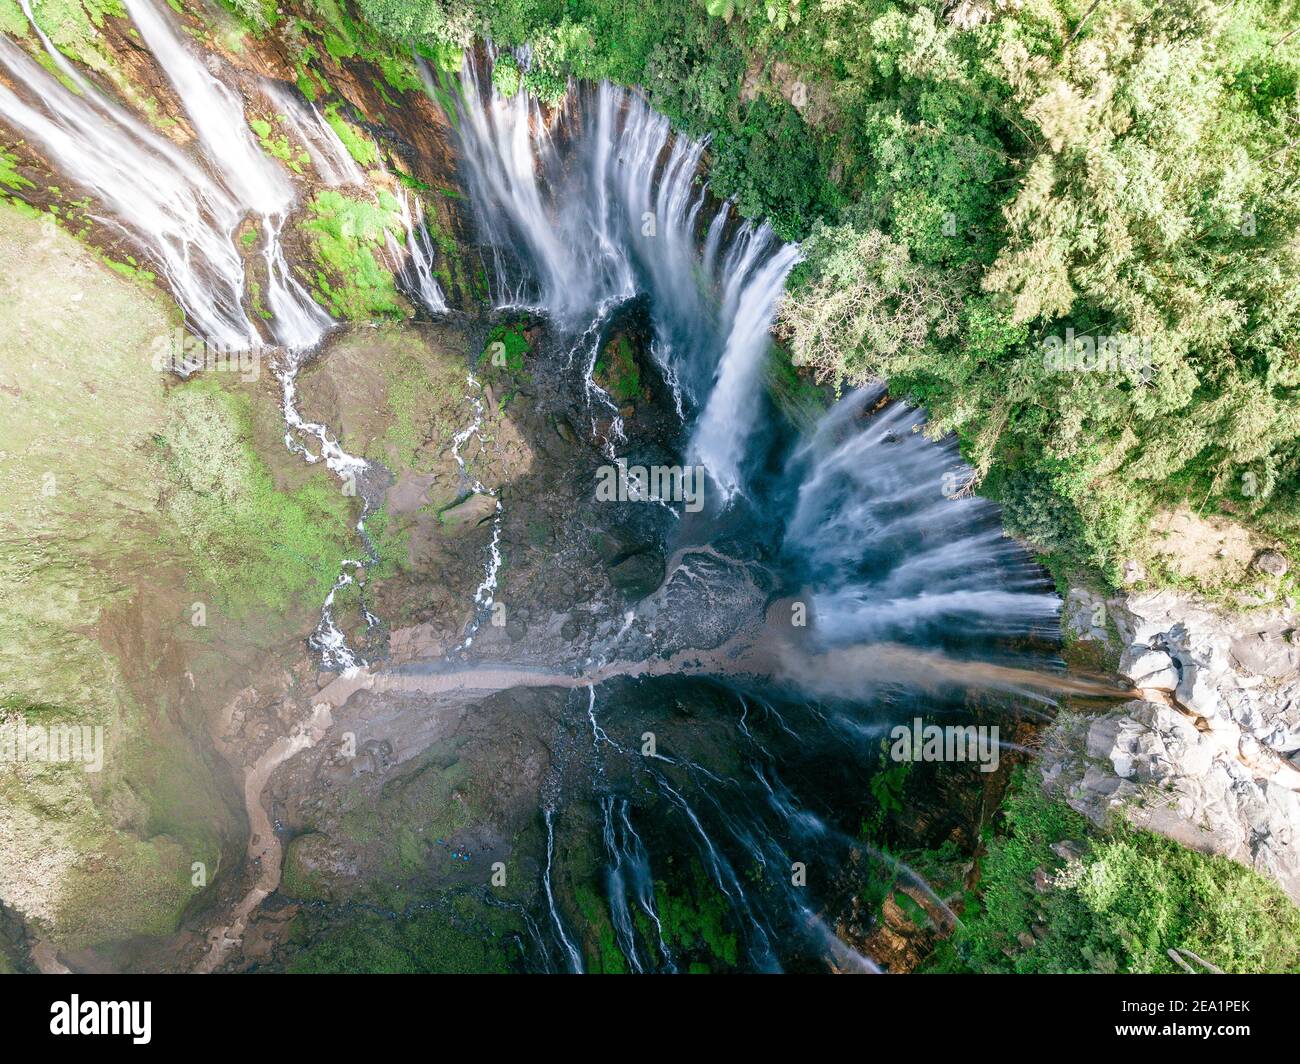 Vue imprenable sur la Sewu Tumpak Cascades également connu sous le nom de Coban Sewu. Sewu Tumpak cascades sont une attraction touristique dans l'Est de Java, Indonésie. Banque D'Images